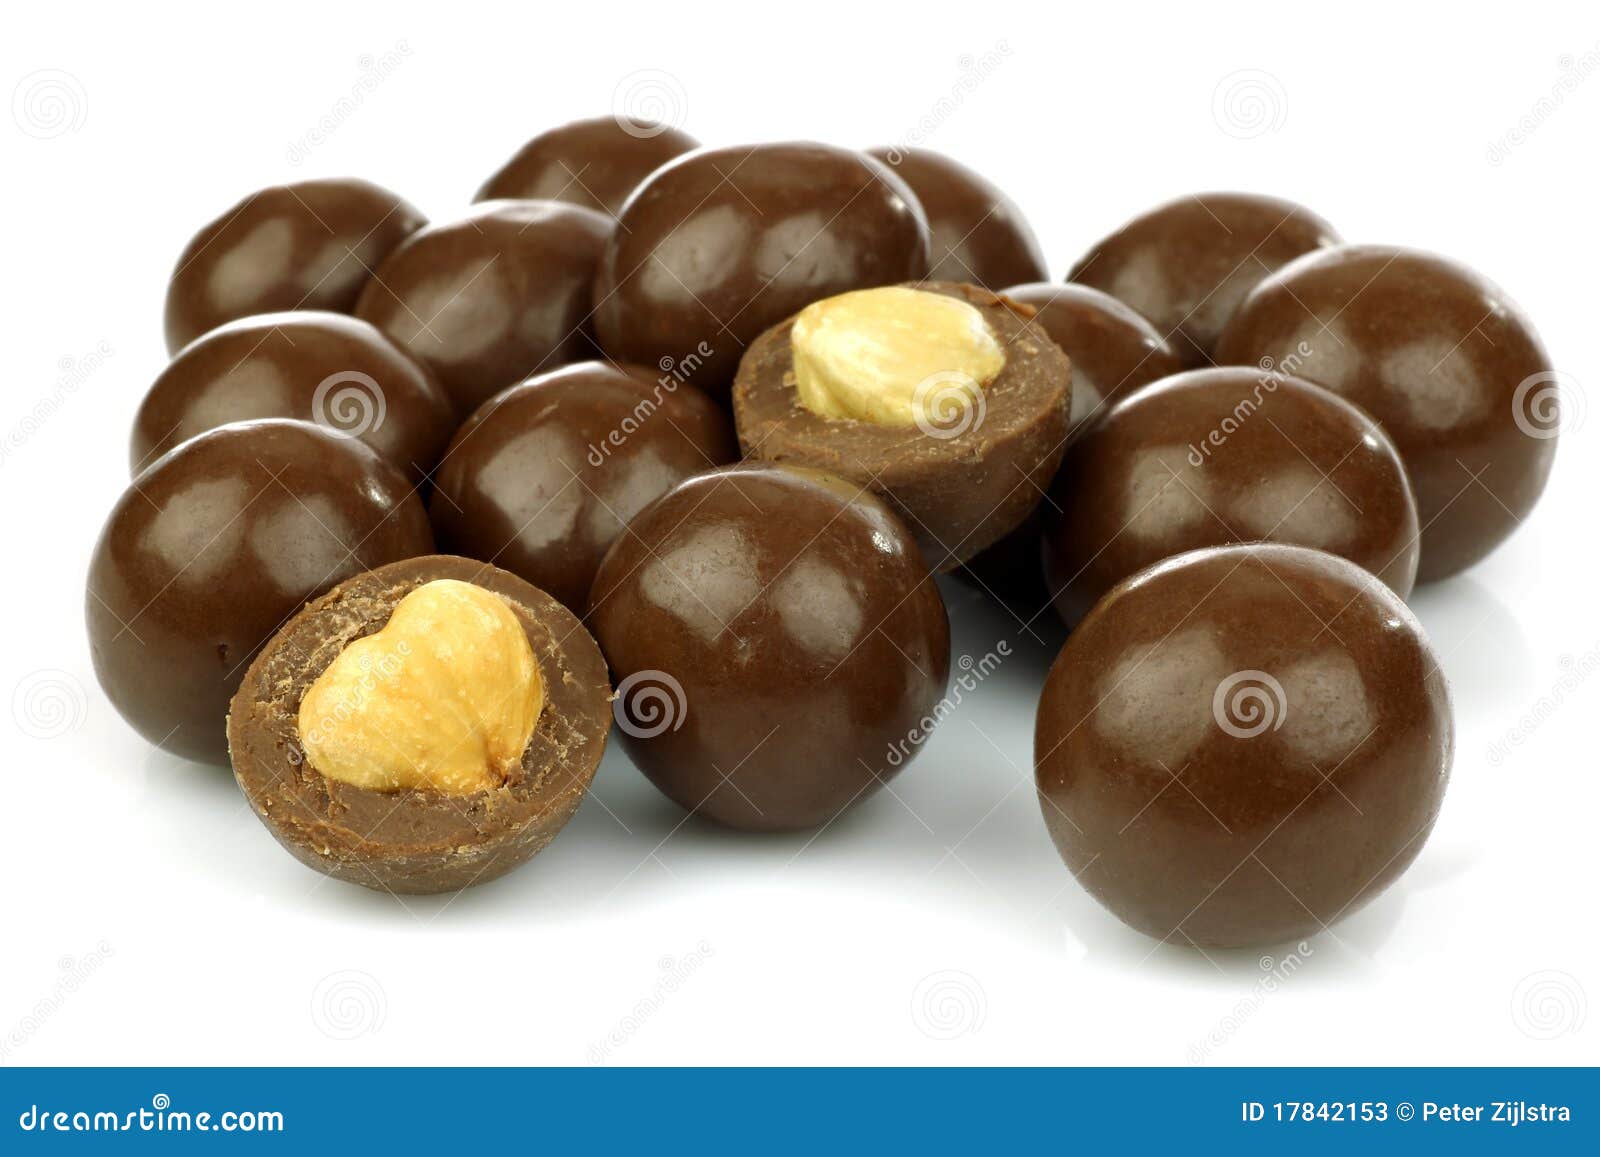 鲜美巧克力的榛子 库存图片. 图片 包括有 关闭, 鲜美, 宏指令, 榛树, 背包, 营养, 可可粉, 果子 - 17753691